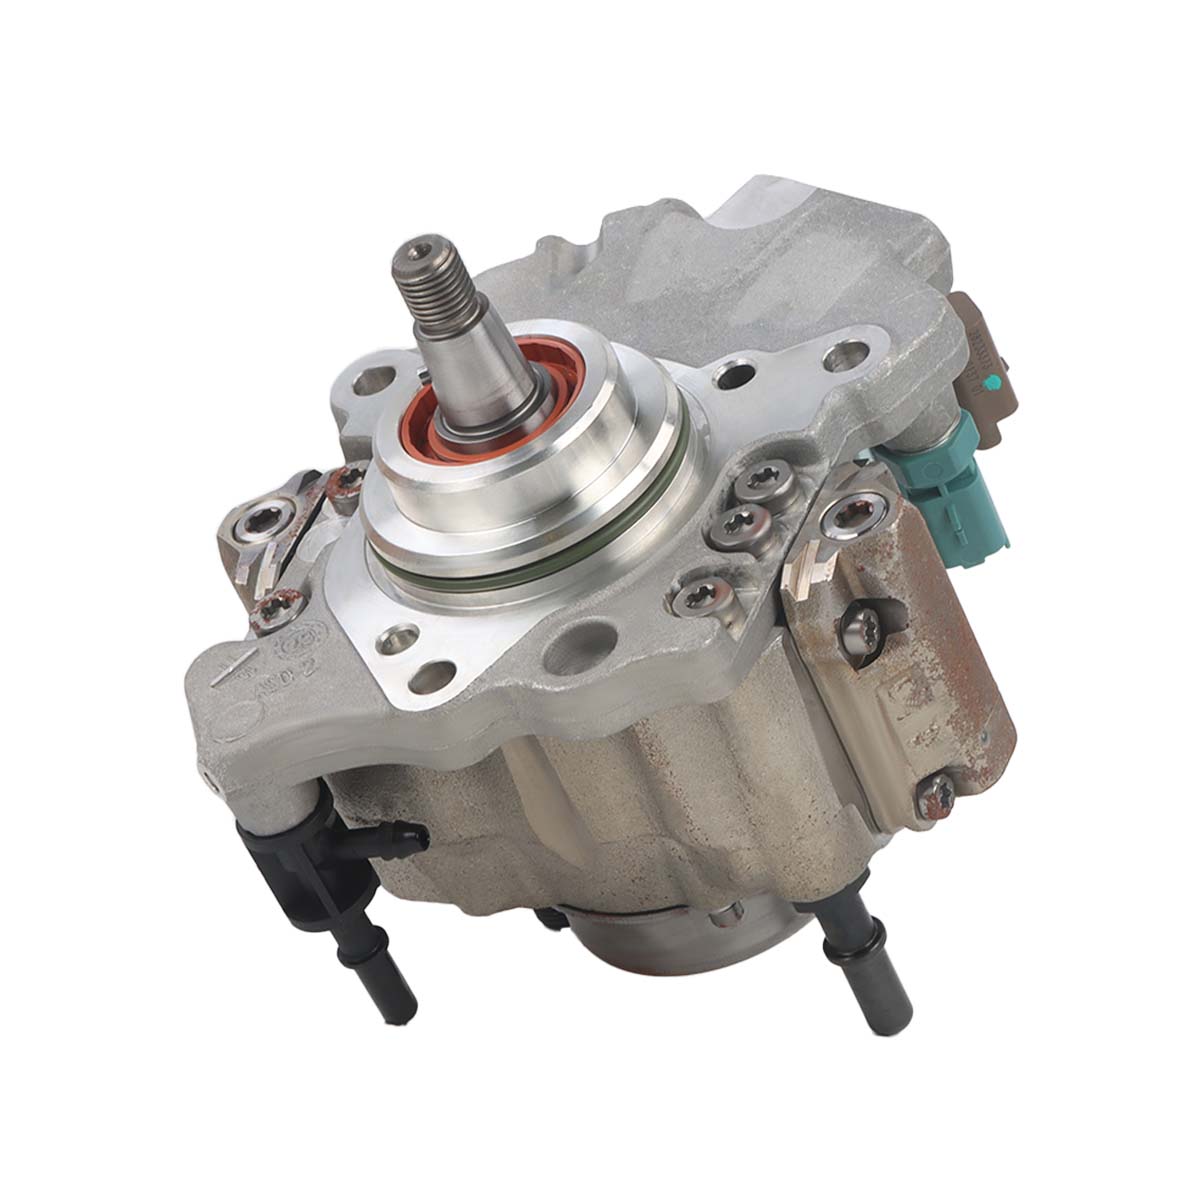 Fuel Injection Pump 28526390 7256789 for Bobcat Doosan D34 Engine S740 S750 S770